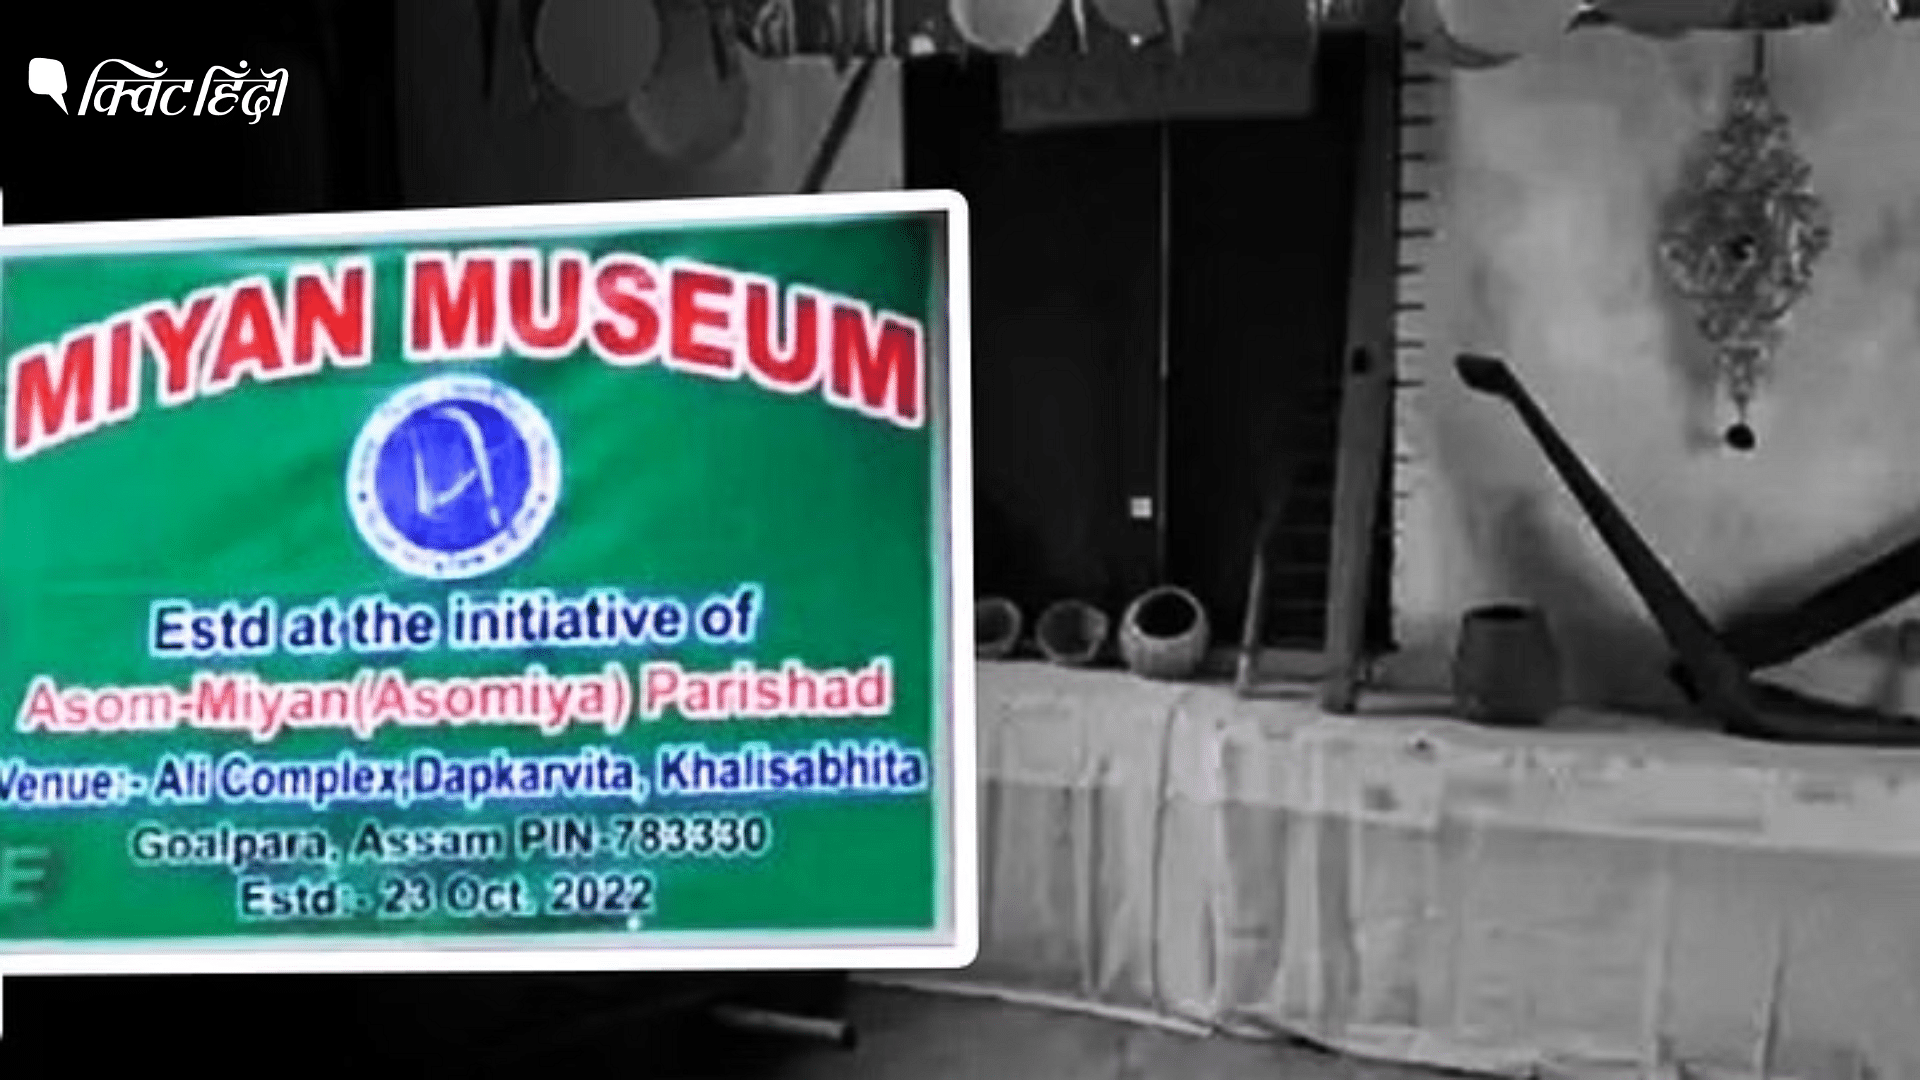 <div class="paragraphs"><p>Assam में Miya Museum खोलने पर गिरफ्तारियां-UAPA केस, इस केस की जड़ में क्या है?</p></div>